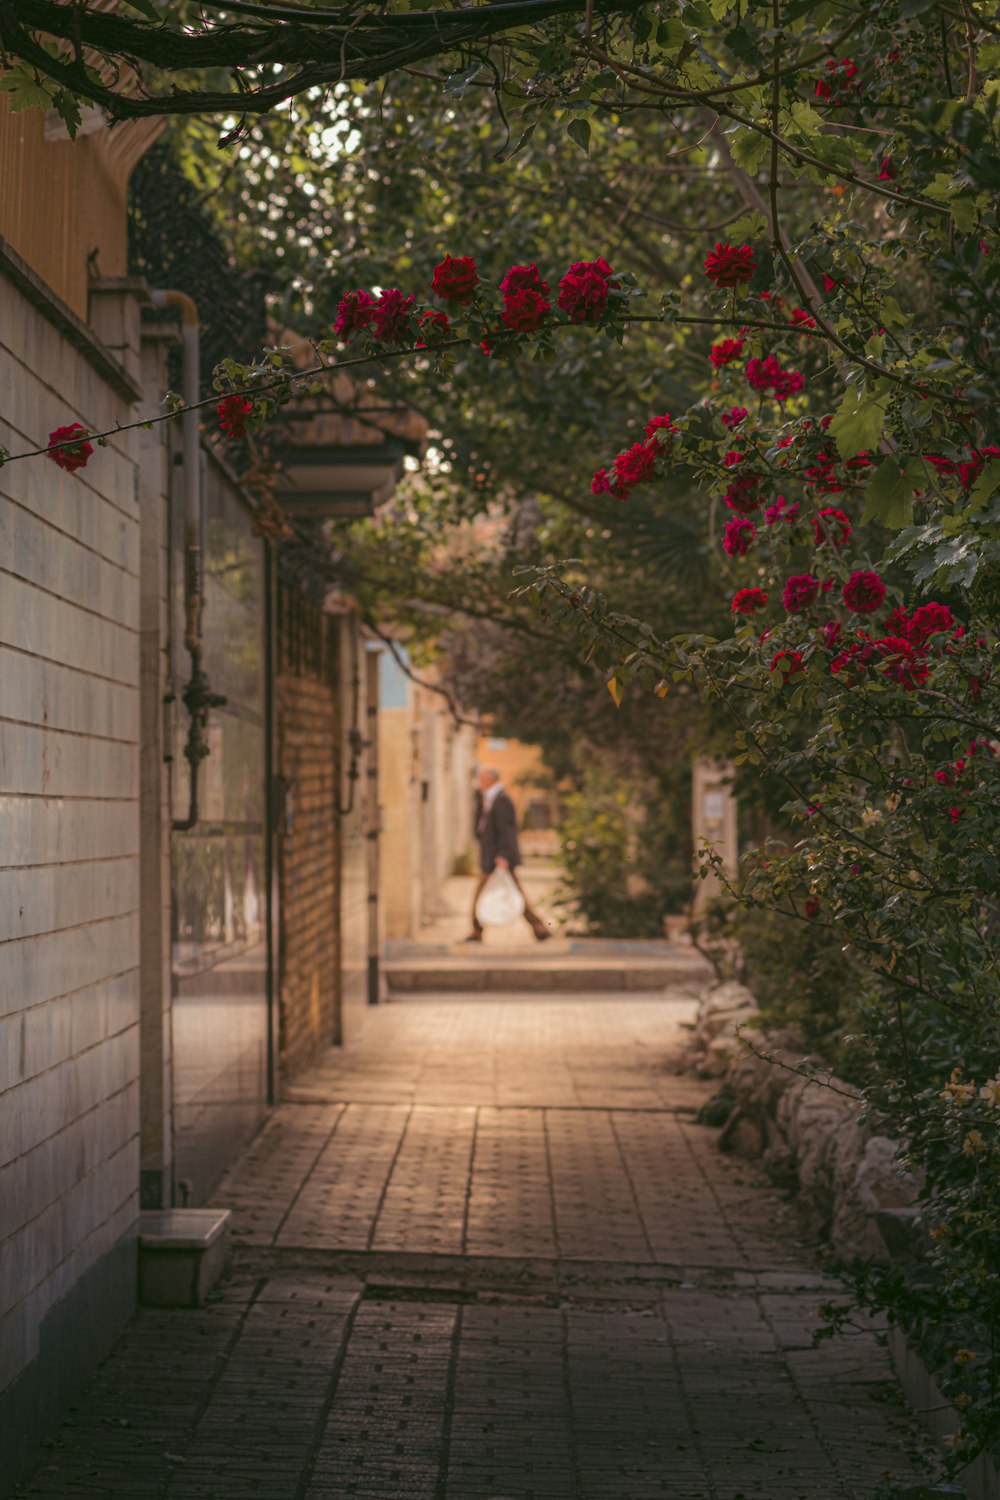 Una persona caminando por una acera con flores rojas